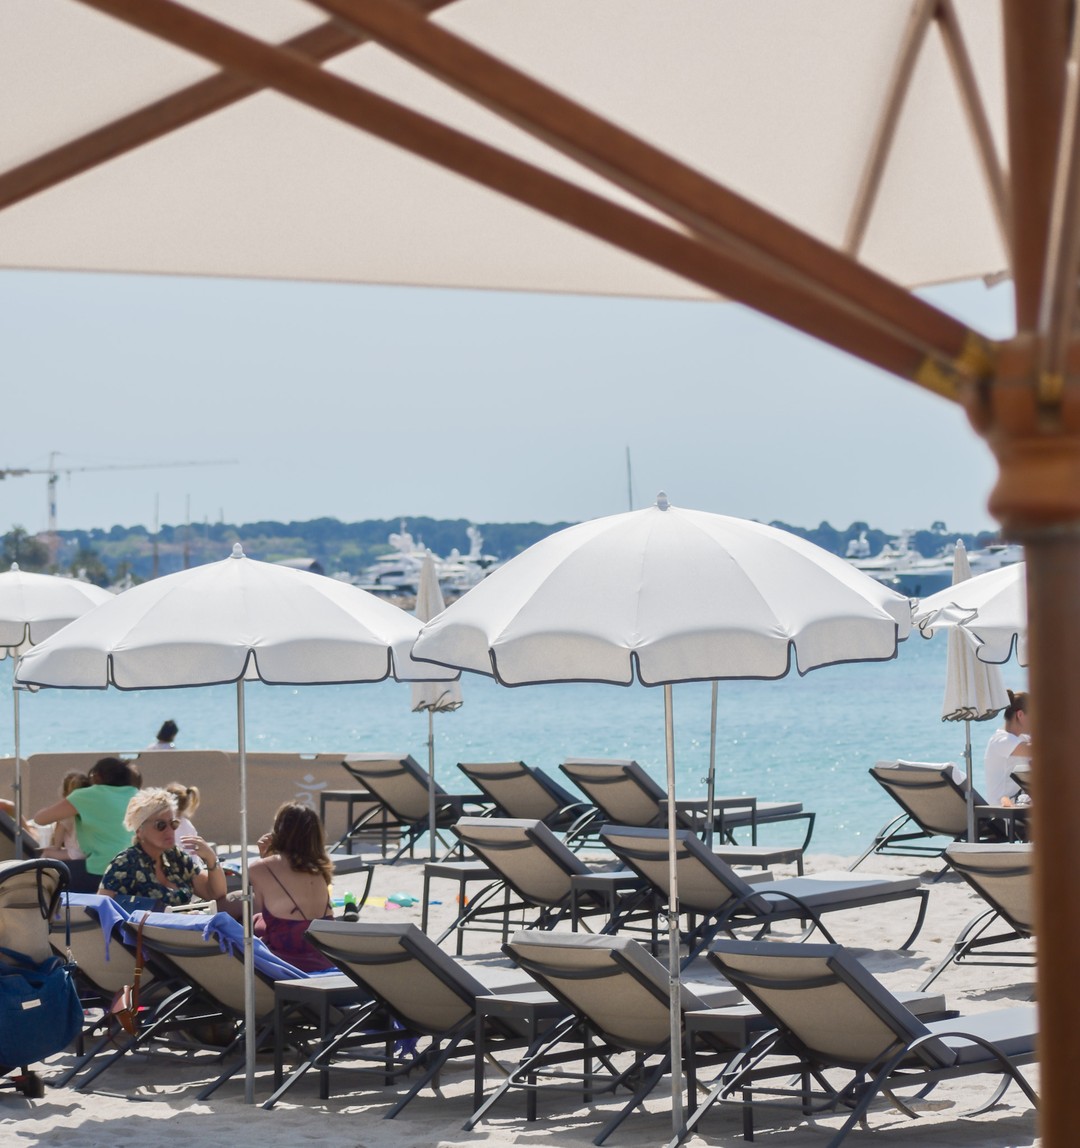 Sunny Sunday ☀️ 
Bon dimanche à tous 💙
_
Boulevard de la Croisette, Cannes
04.93.43.67.05
www.vegaluna.fr  #food #restaurant #beach #cotedazur #plage #summer #frenchriviera